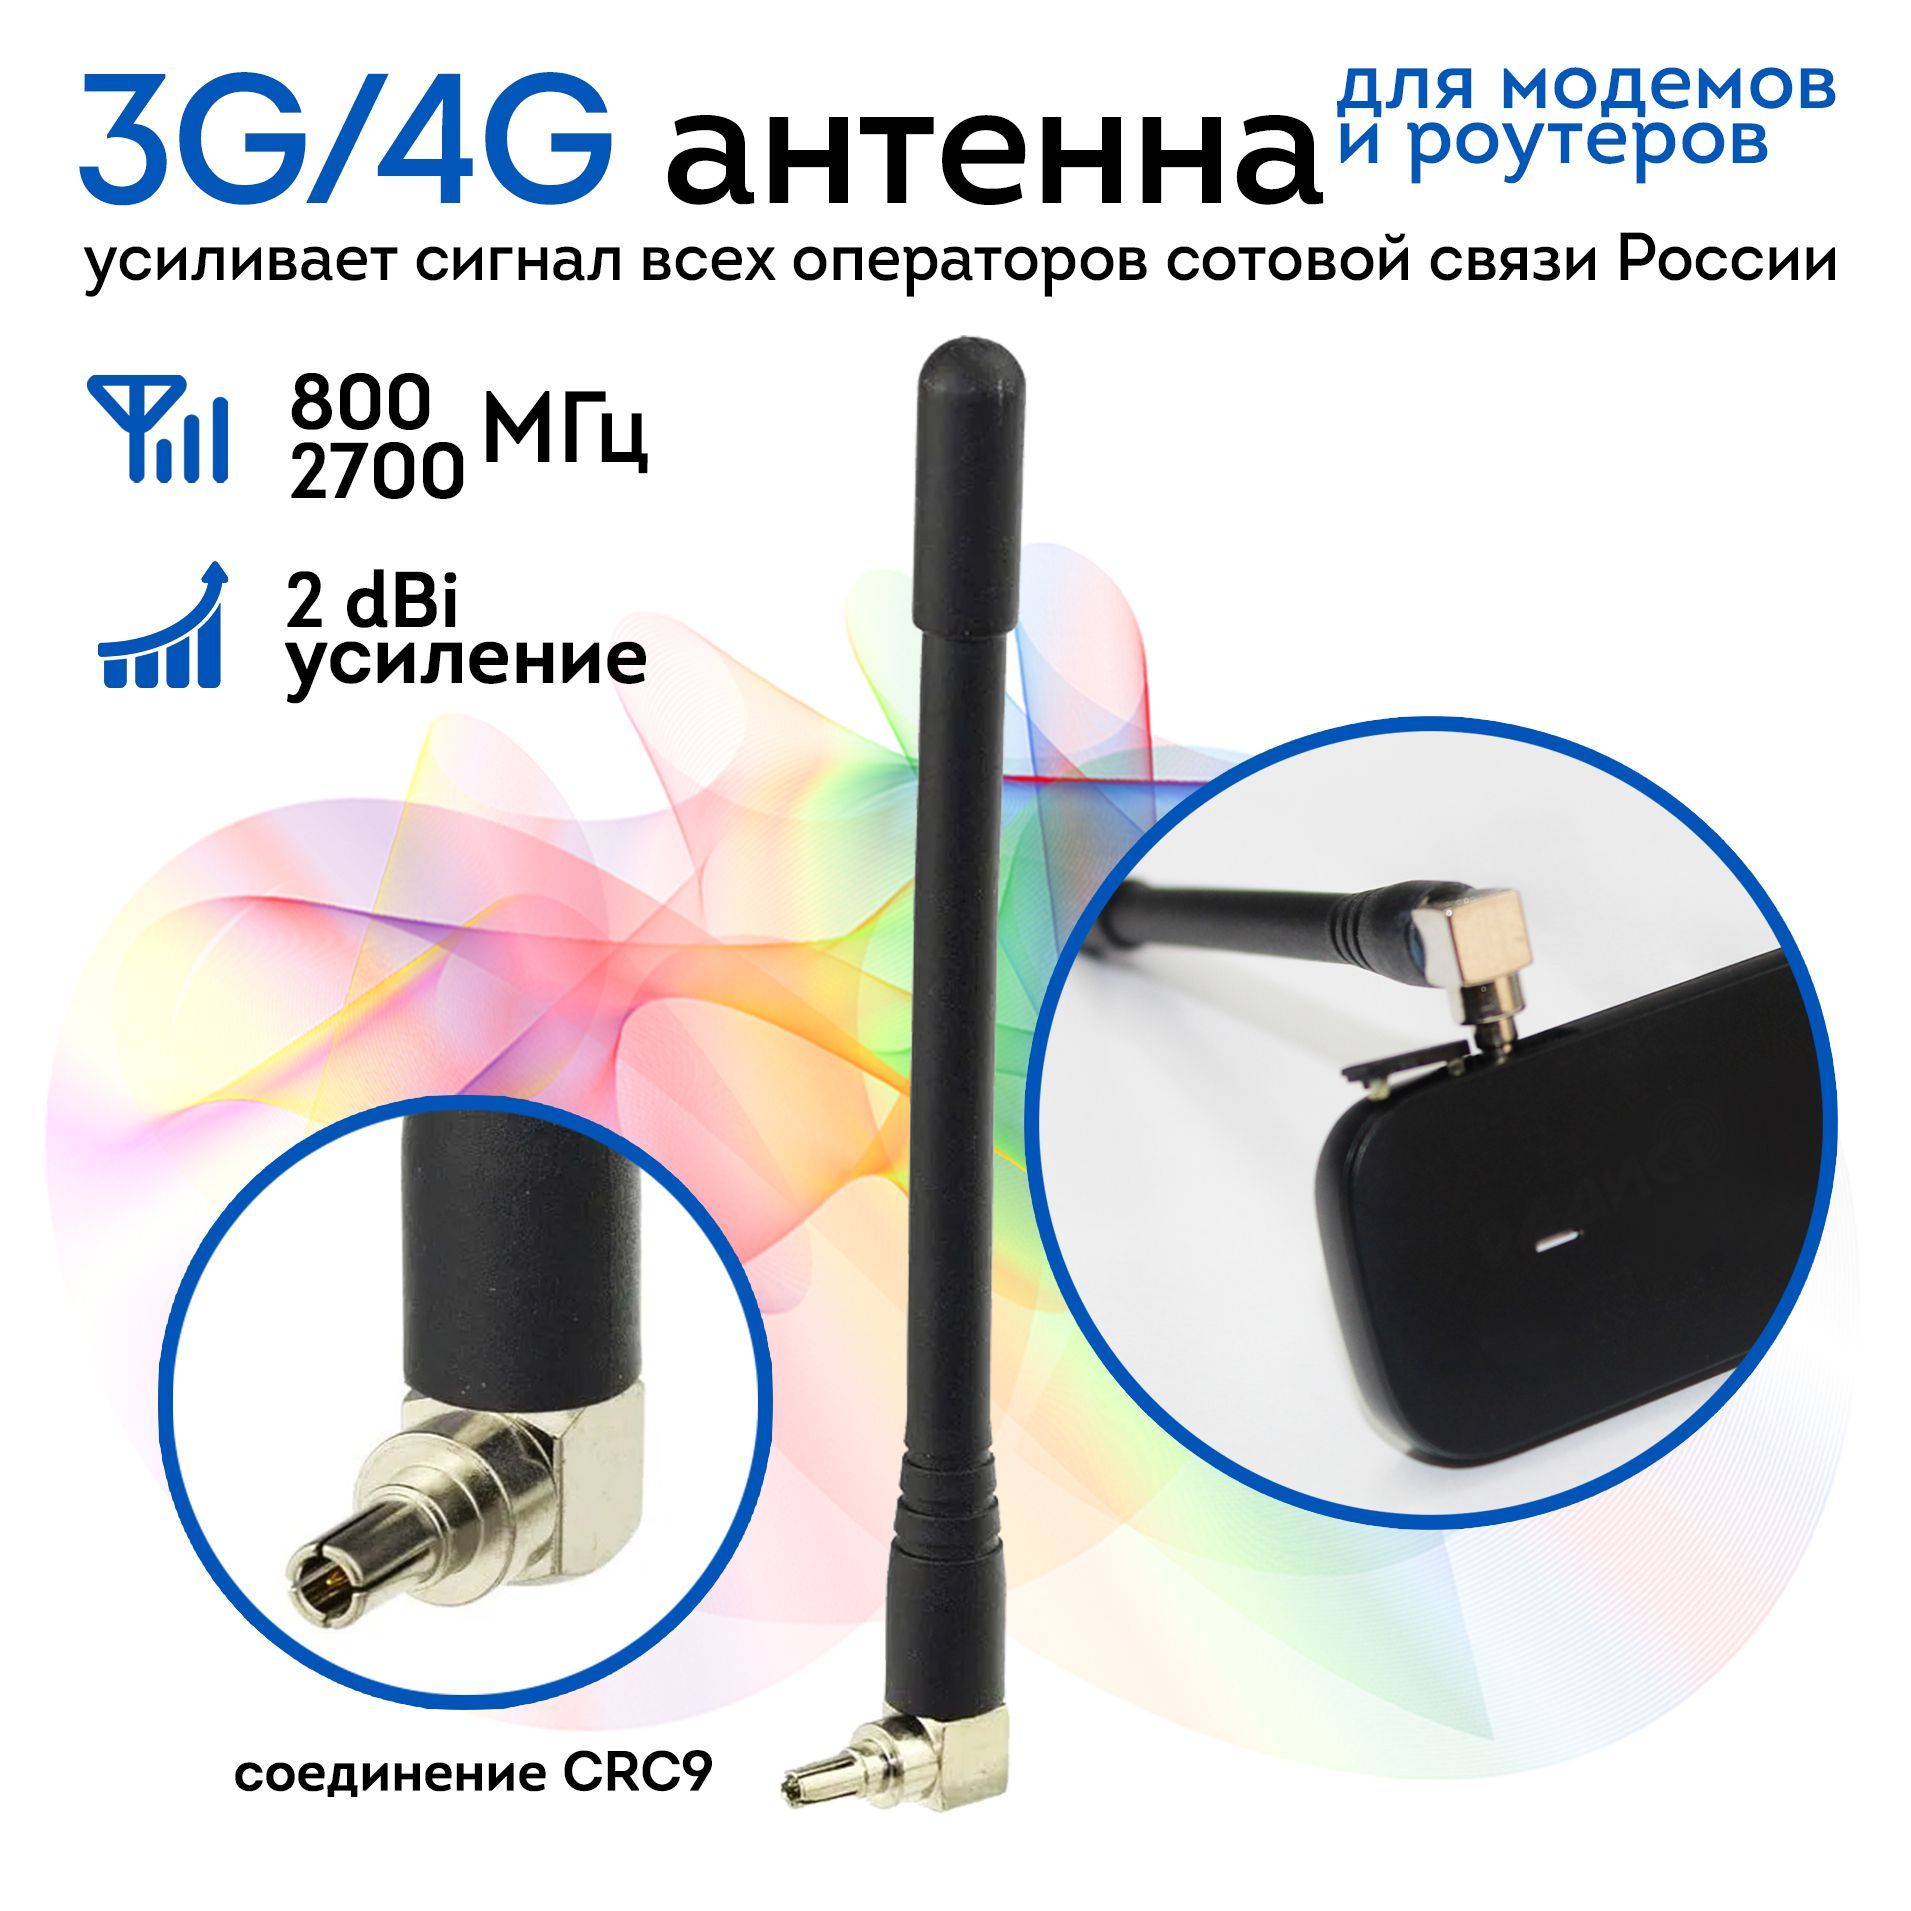 эталон62.рф • Тема - Антенны и усилители сигнала для 3G/4G модема своими руками